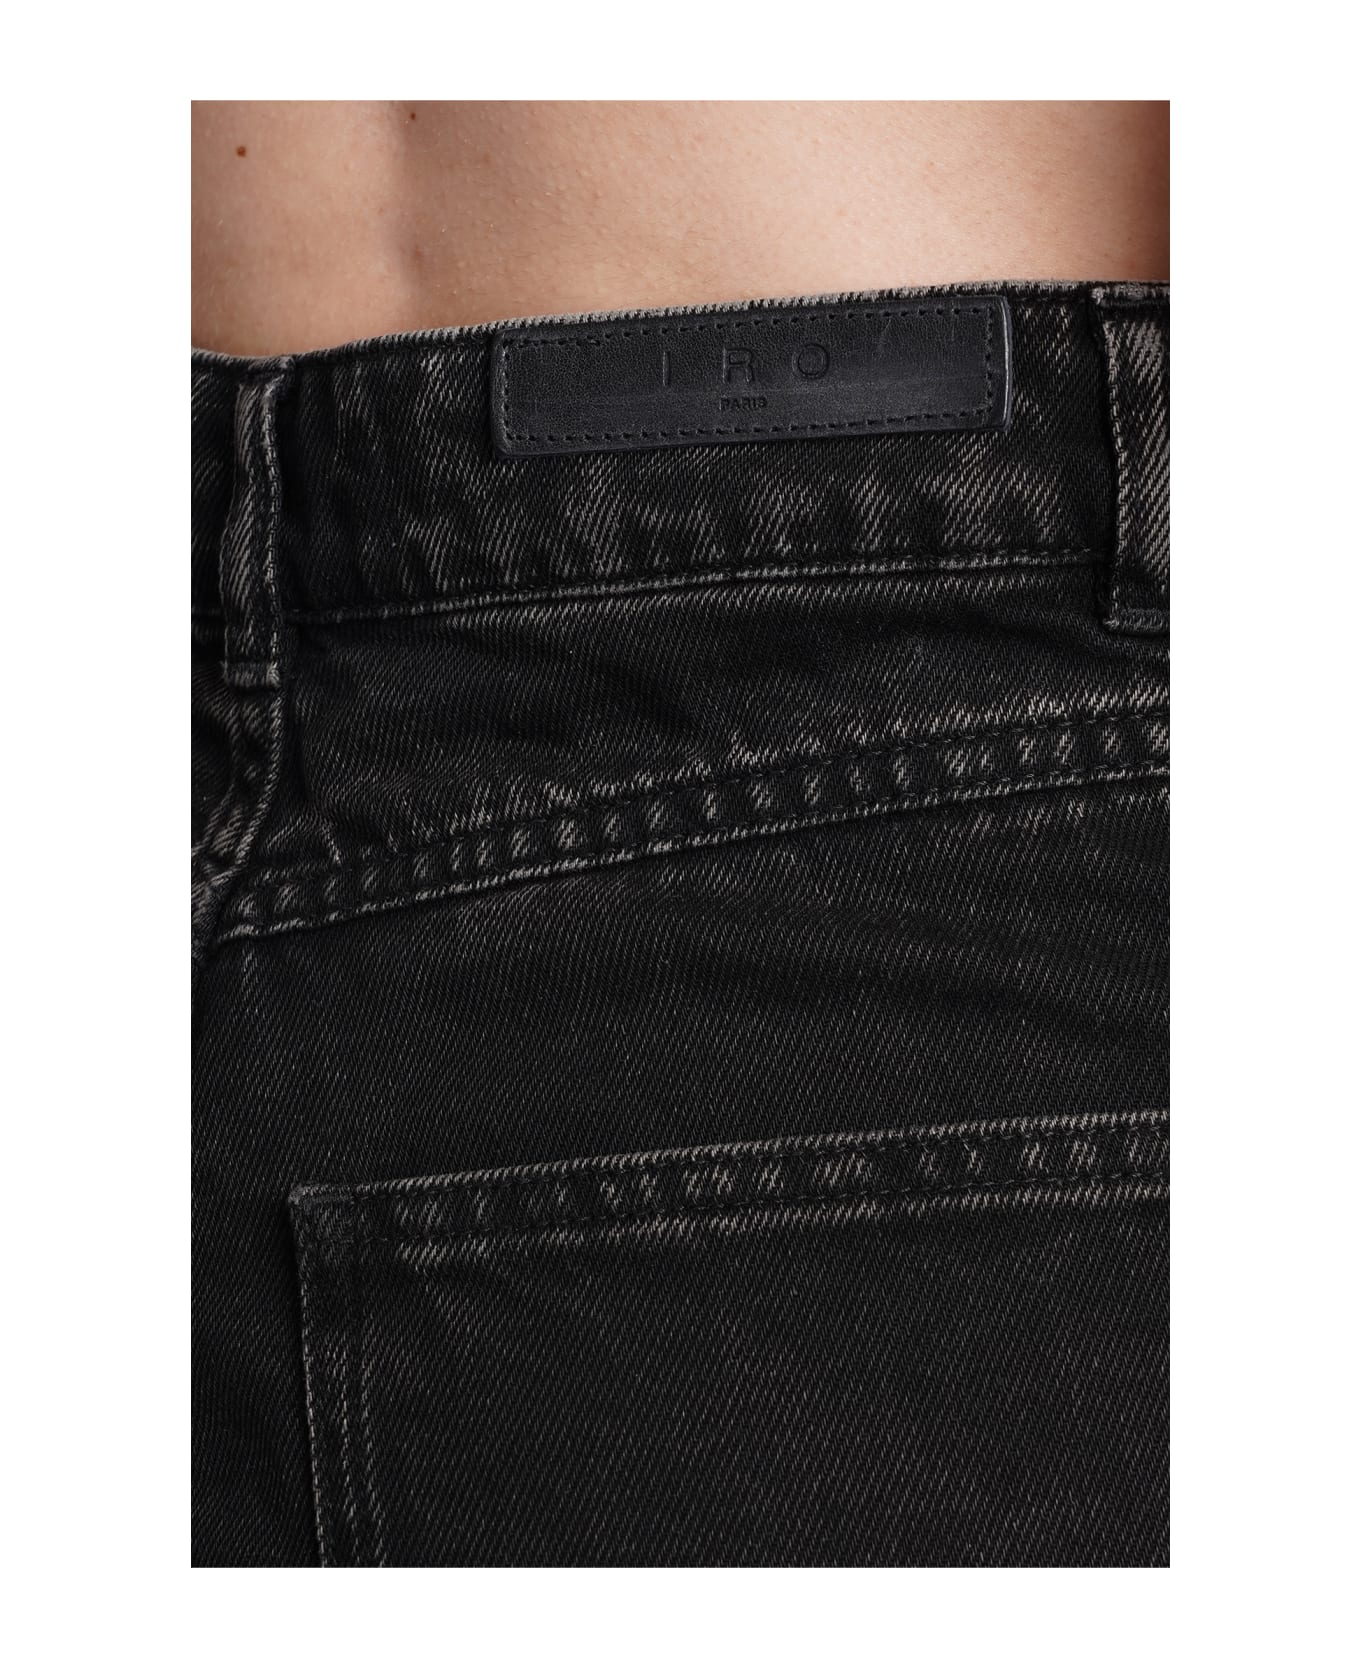 IRO Elgama Shorts In Black Cotton - black ショートパンツ